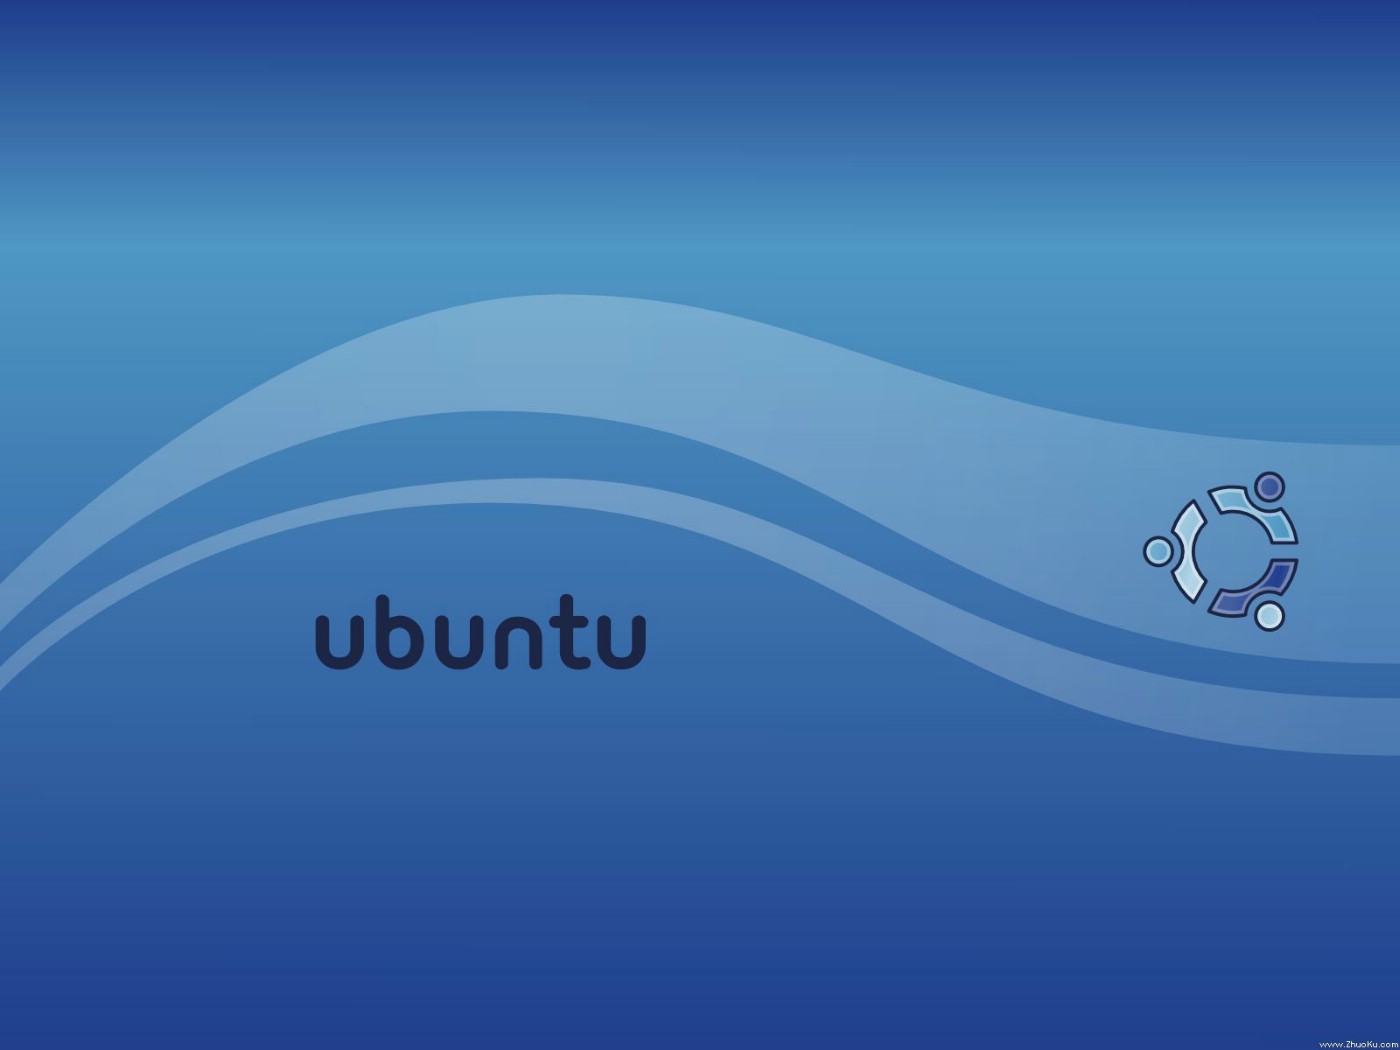 壁纸1400x1050Ubuntu Linux 作业系统1024 768 1280 1024 1600 1200 壁纸26壁纸 Ubuntu Lin壁纸 Ubuntu Lin图片 Ubuntu Lin素材 系统壁纸 系统图库 系统图片素材桌面壁纸